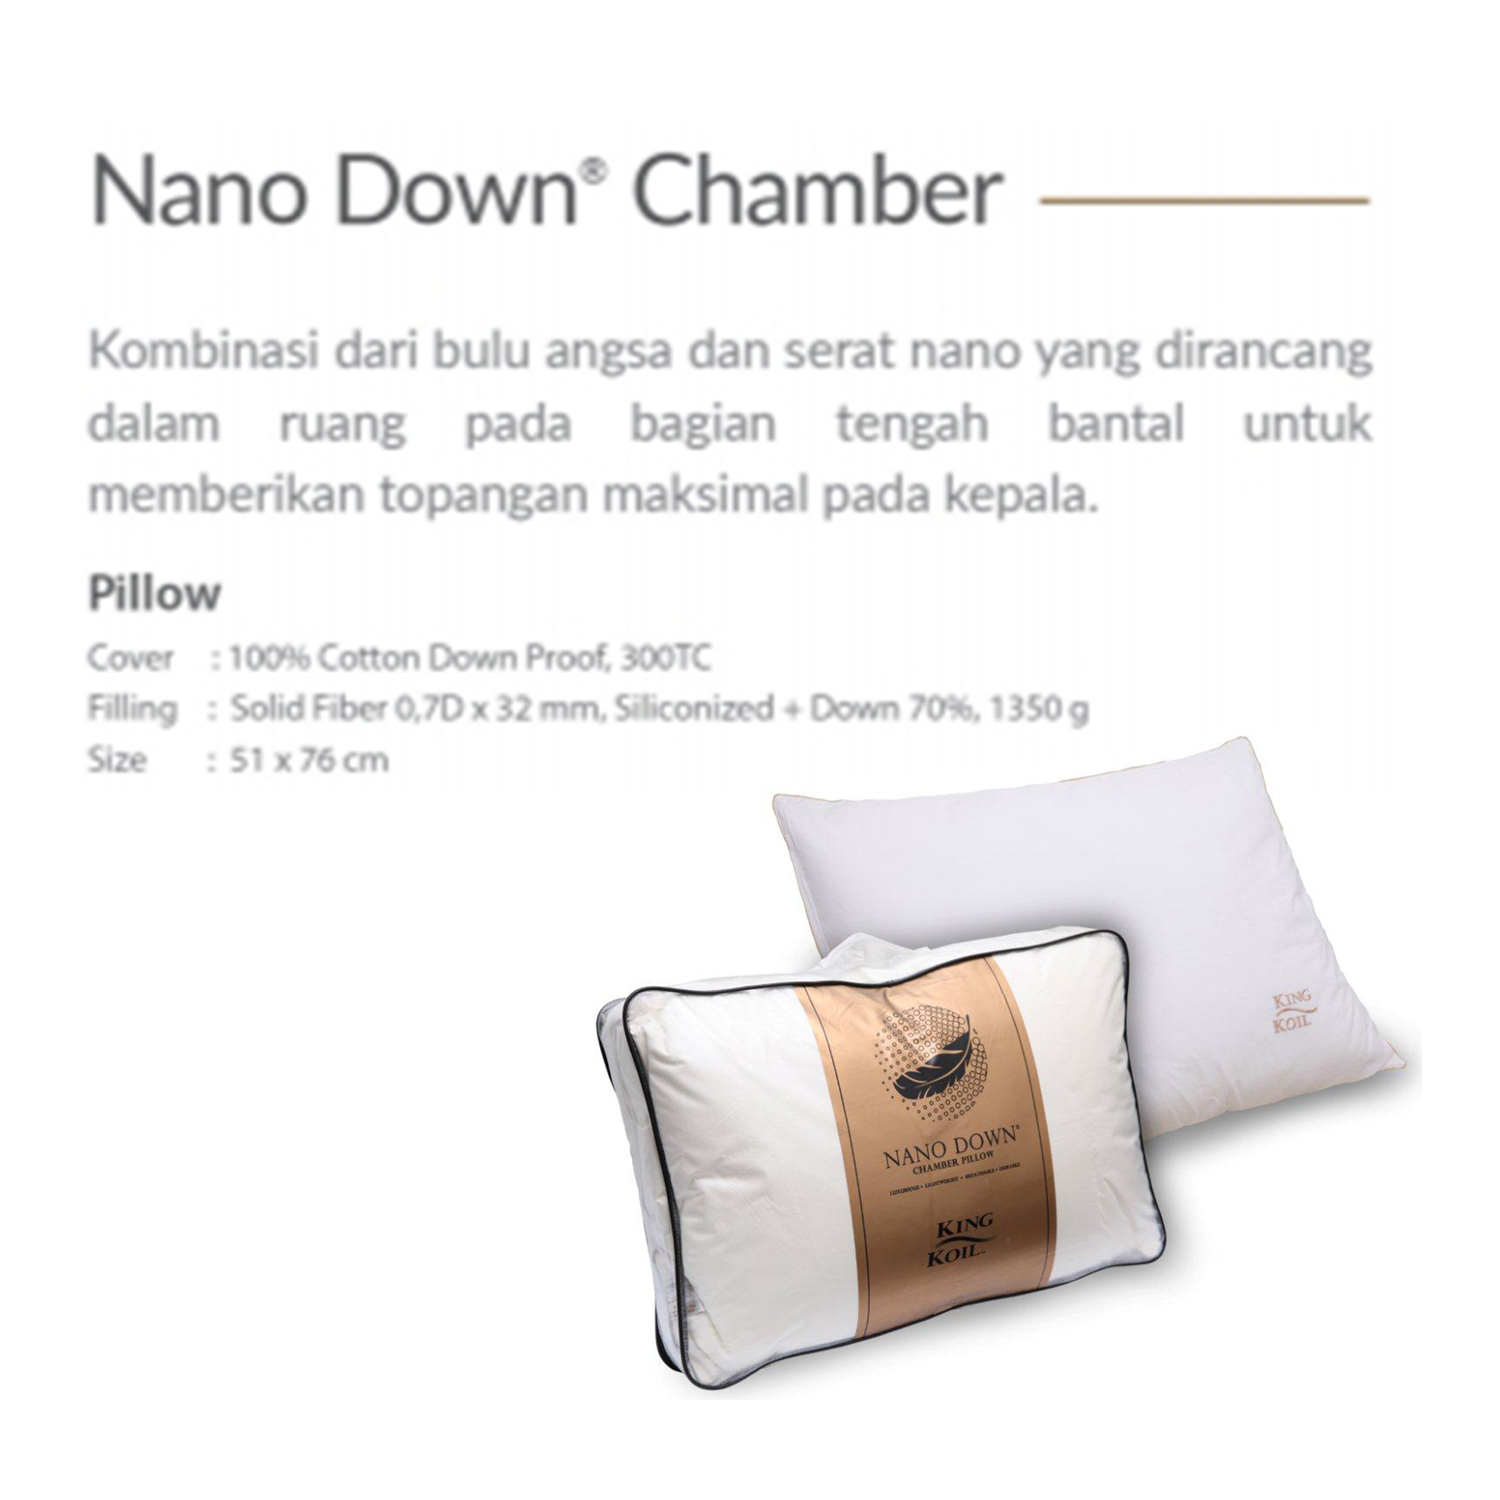 King Koil Nano Down Chamber Pillow 51X76 - Bantal Tidur